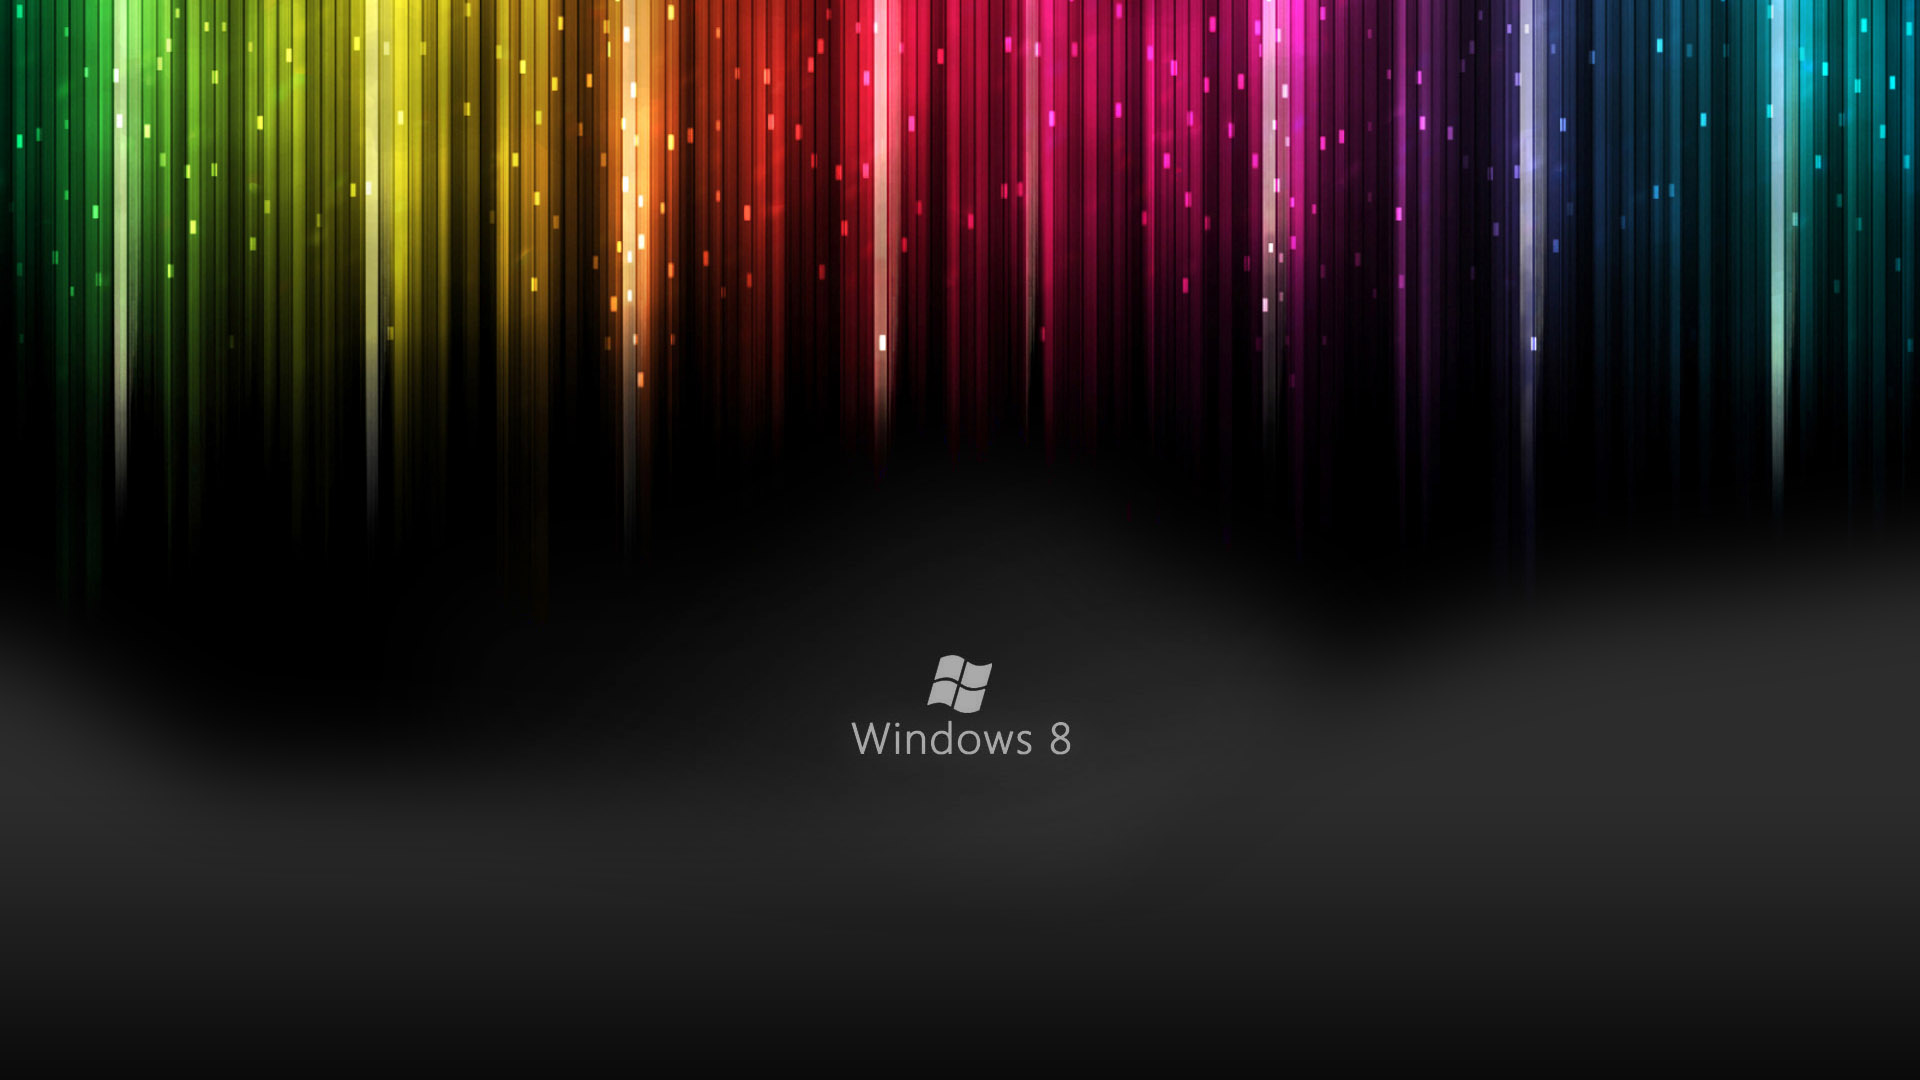 Windows Live Wallpapers HD Wallpaper of Windows hdwallpaper2013